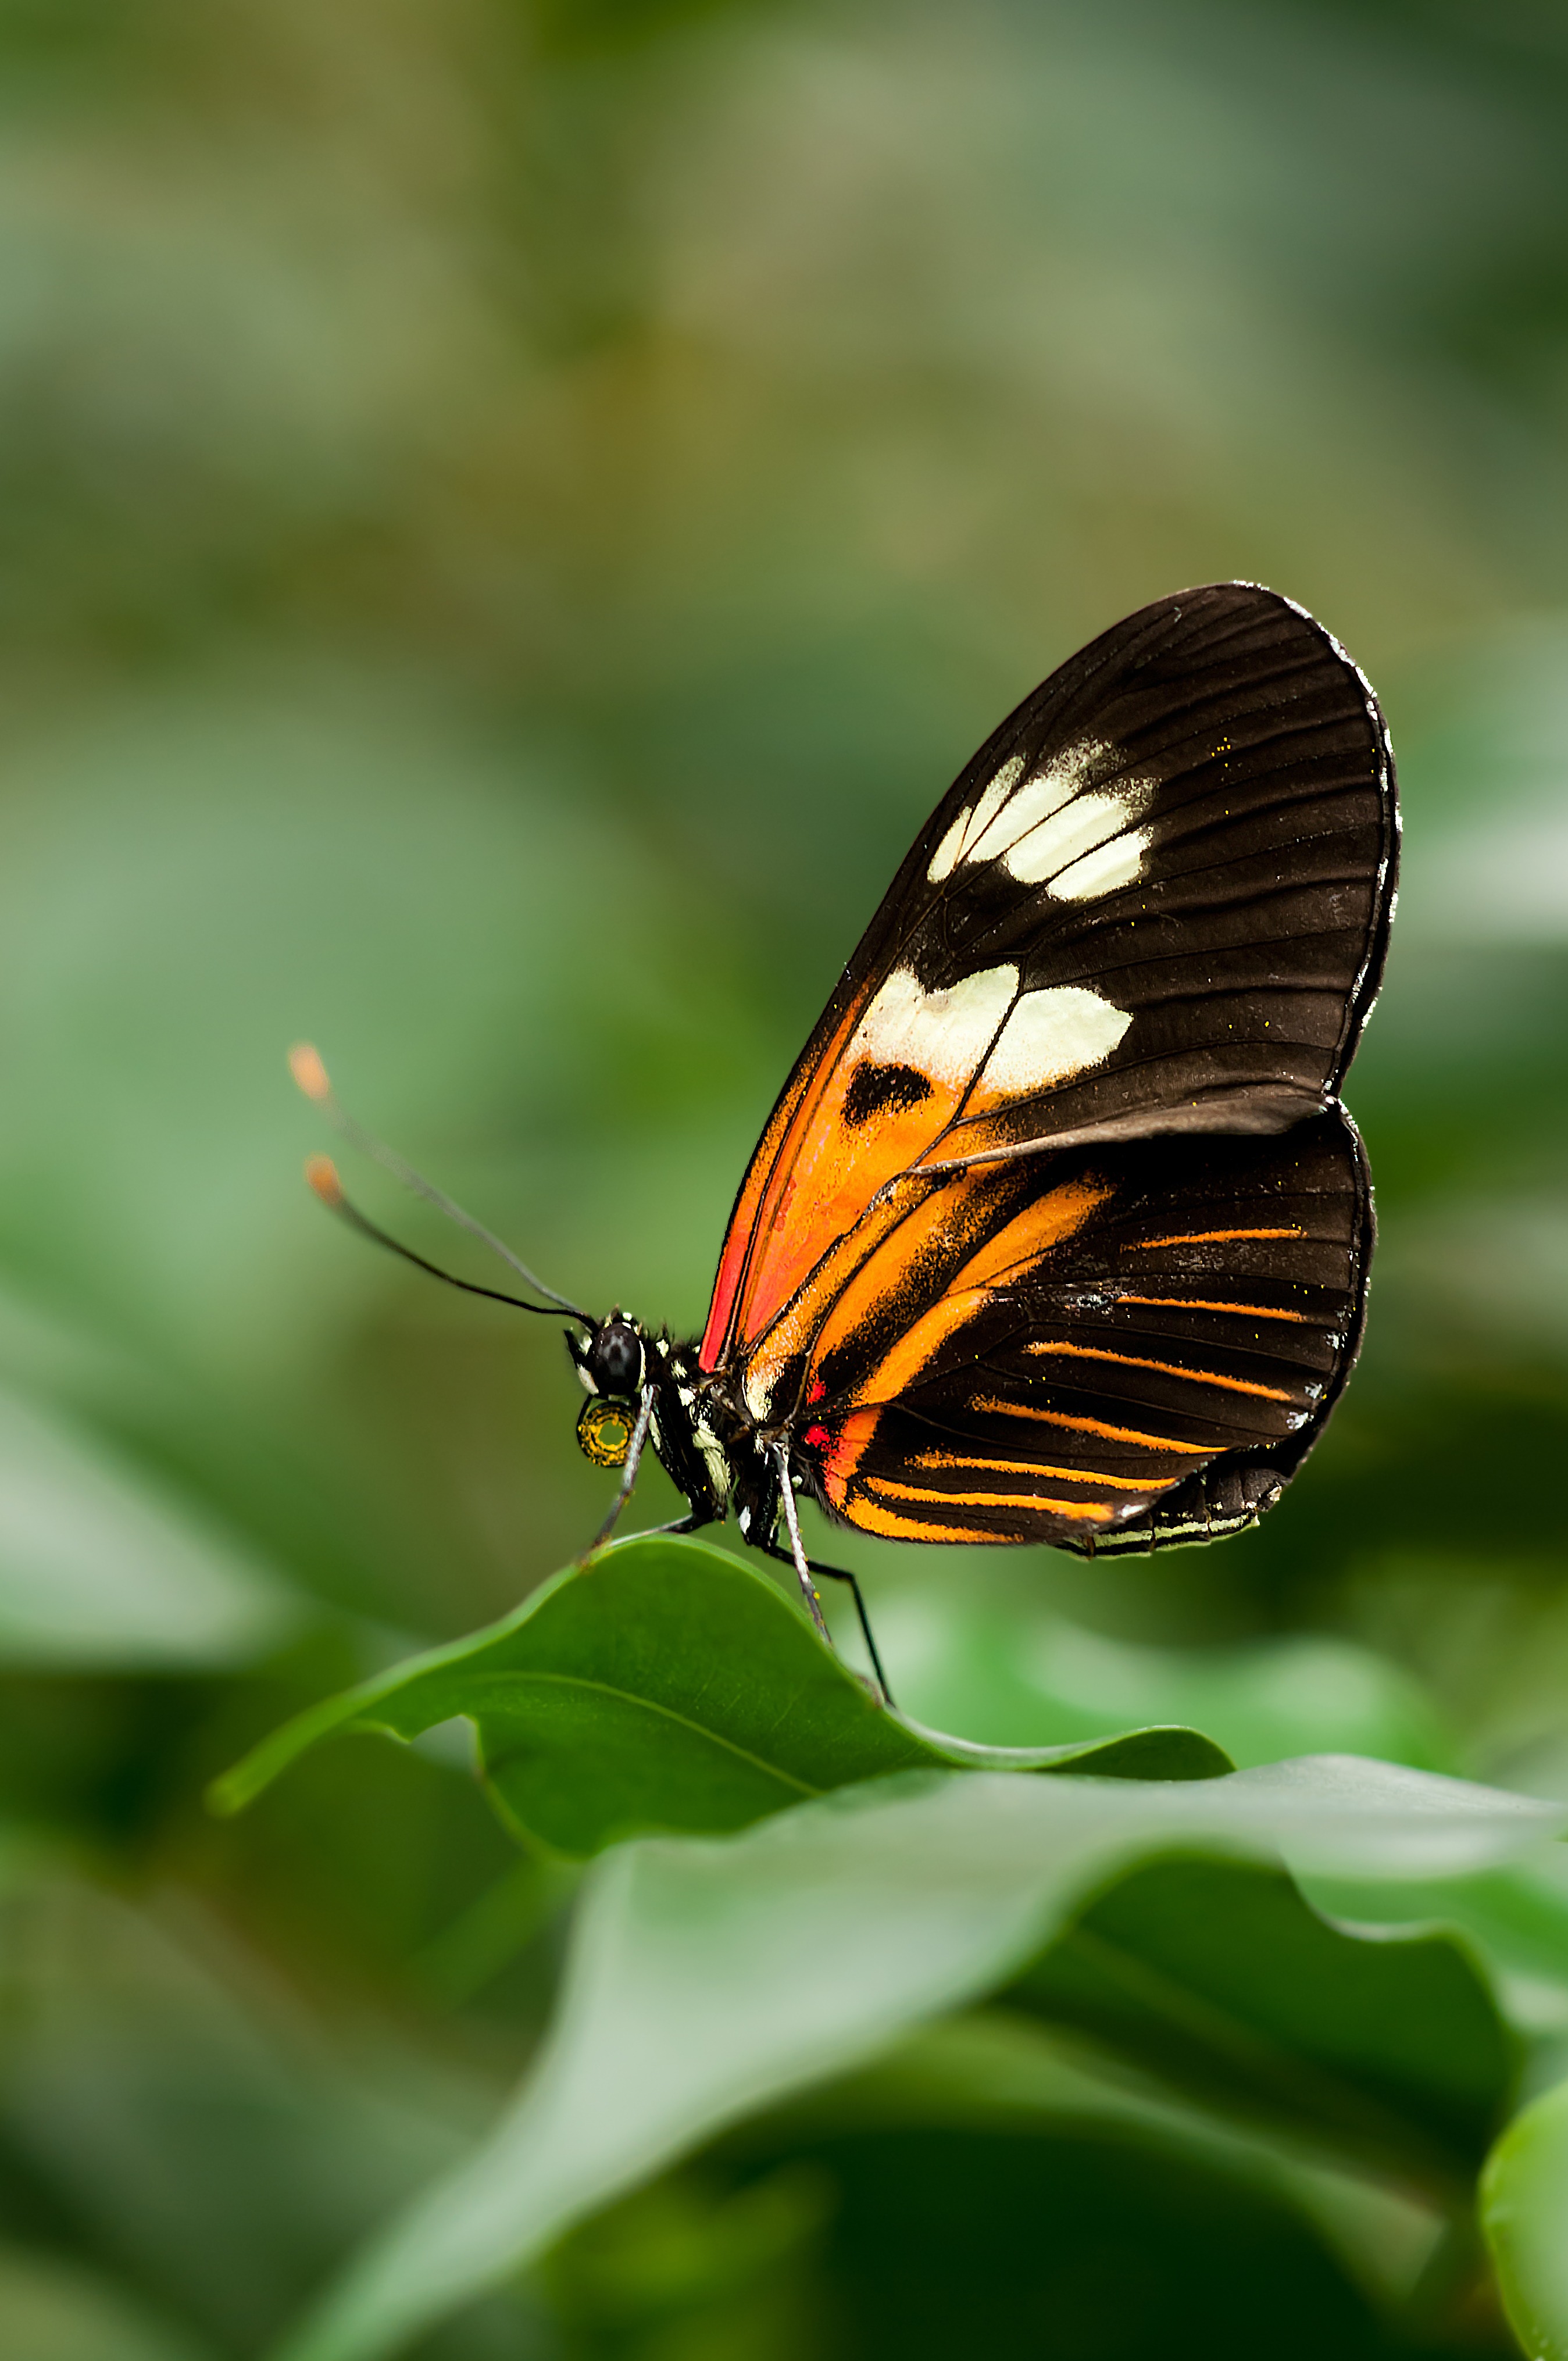 一只美丽的蝴蝶坐在一片绿叶上。